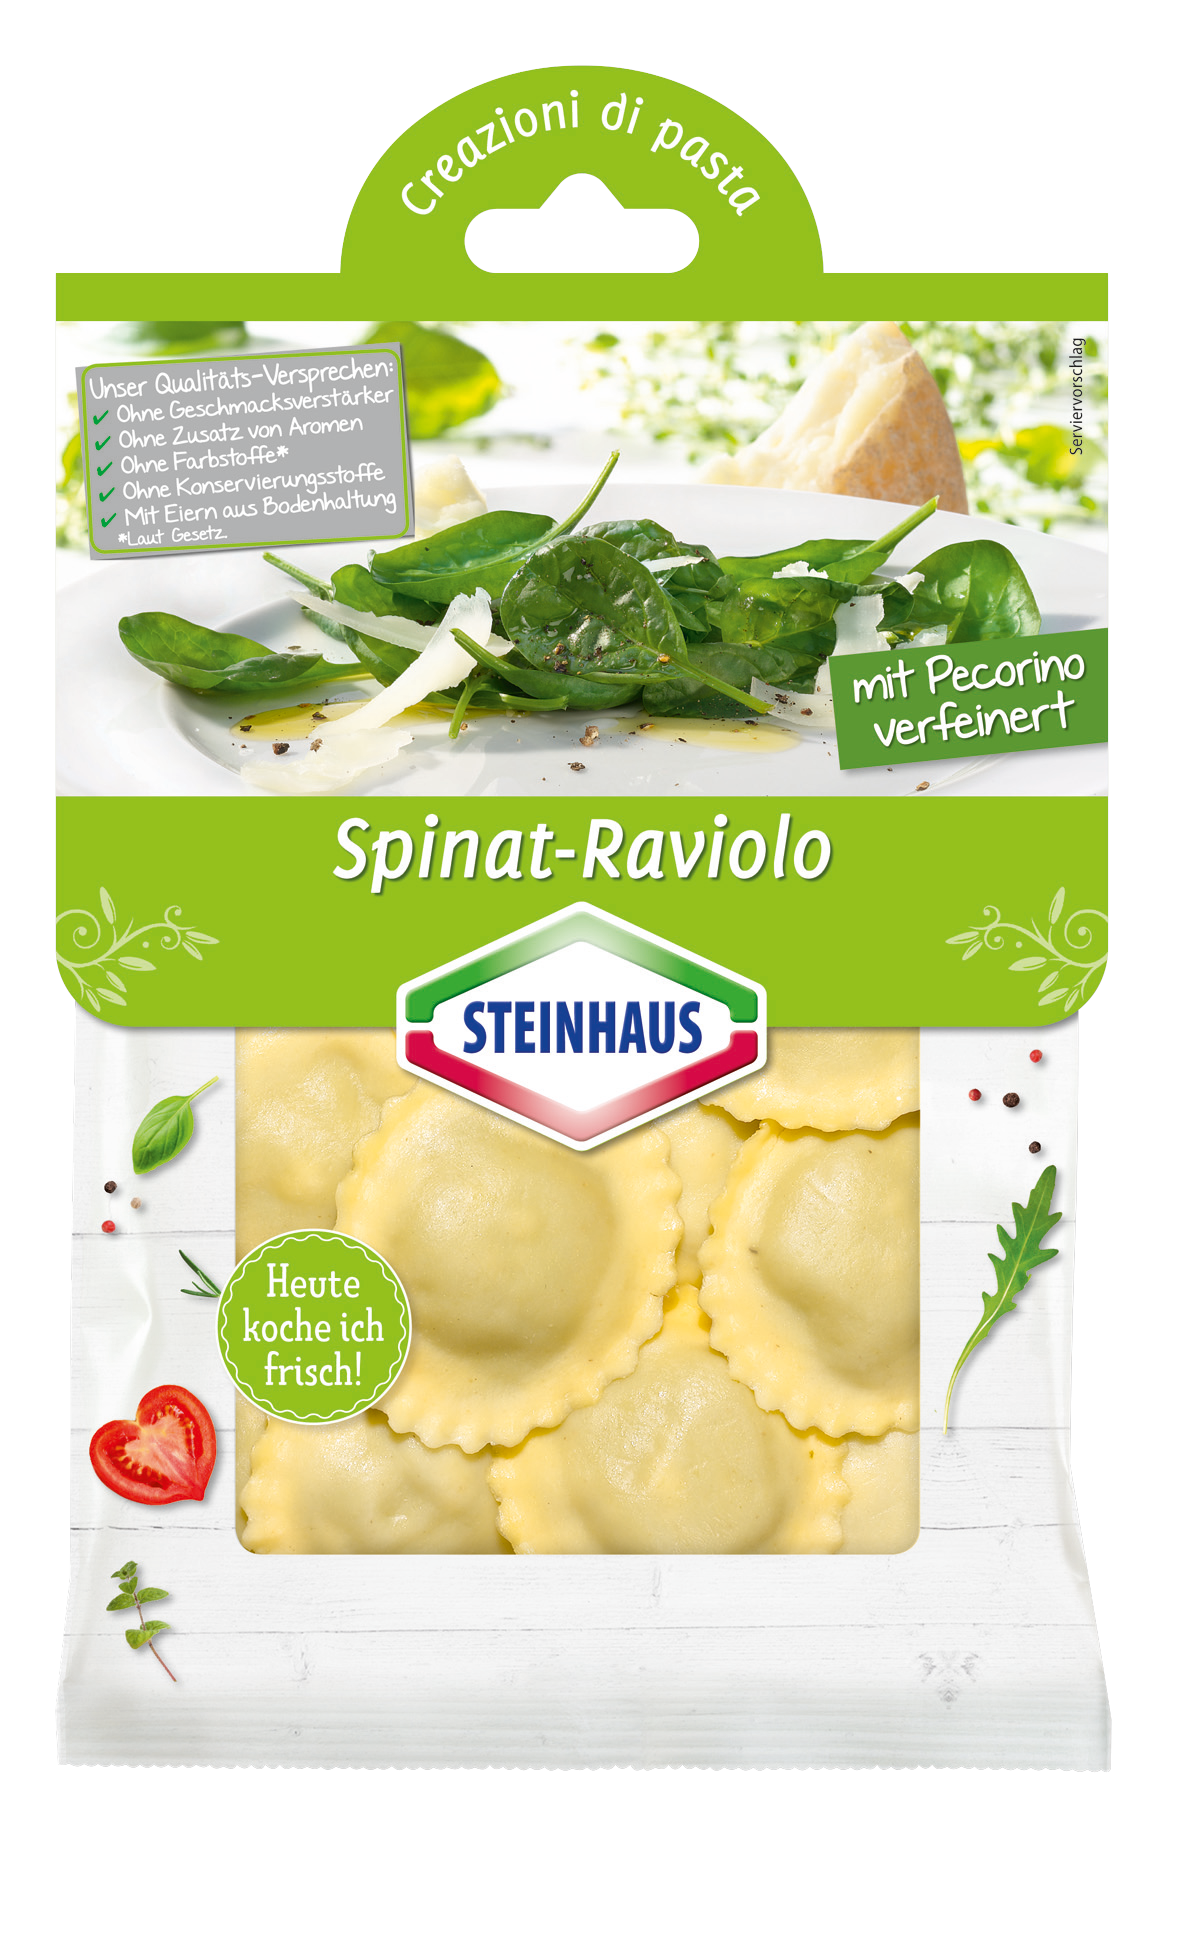 Spinat Raviolo – Cremig und würzig zugleich. Frische gefüllte Raviolo mit Blattspinat, Ricotta und Pecorino-Käse – das ist moderner Pastagenuss für jeden Tag.